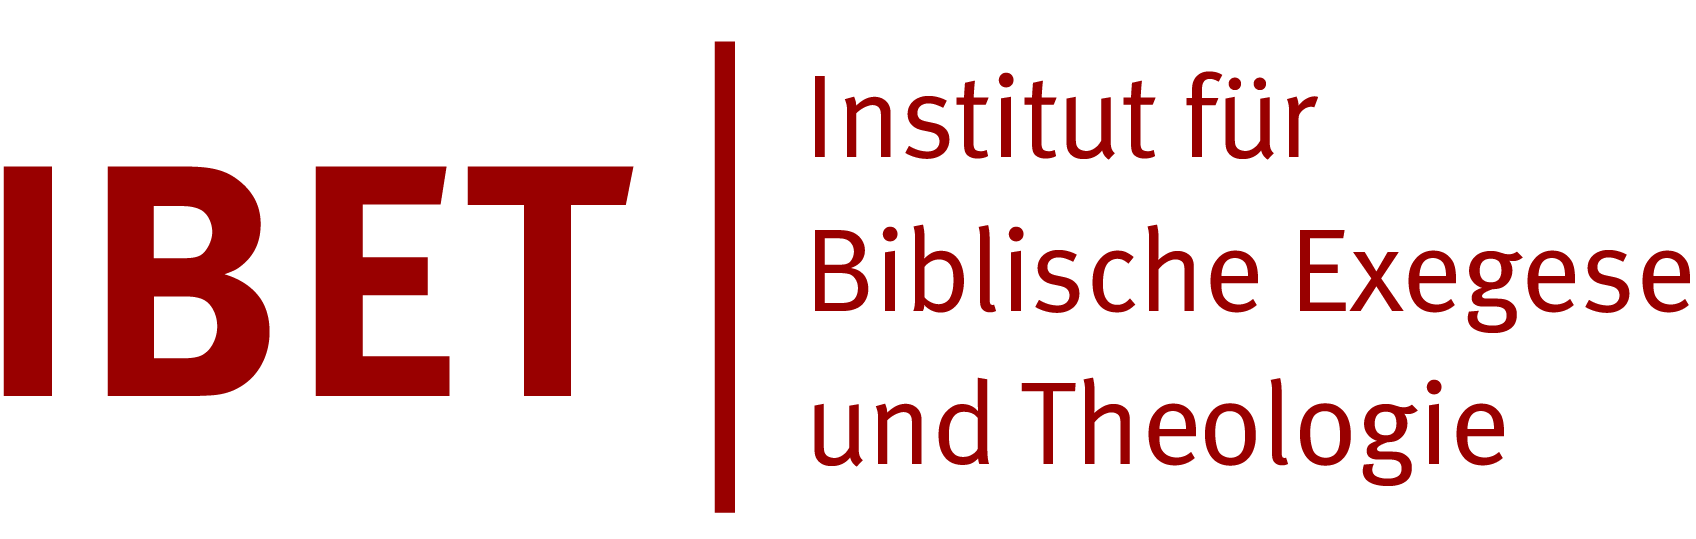 Institut für Biblische Exegese und Theologie (IBET)